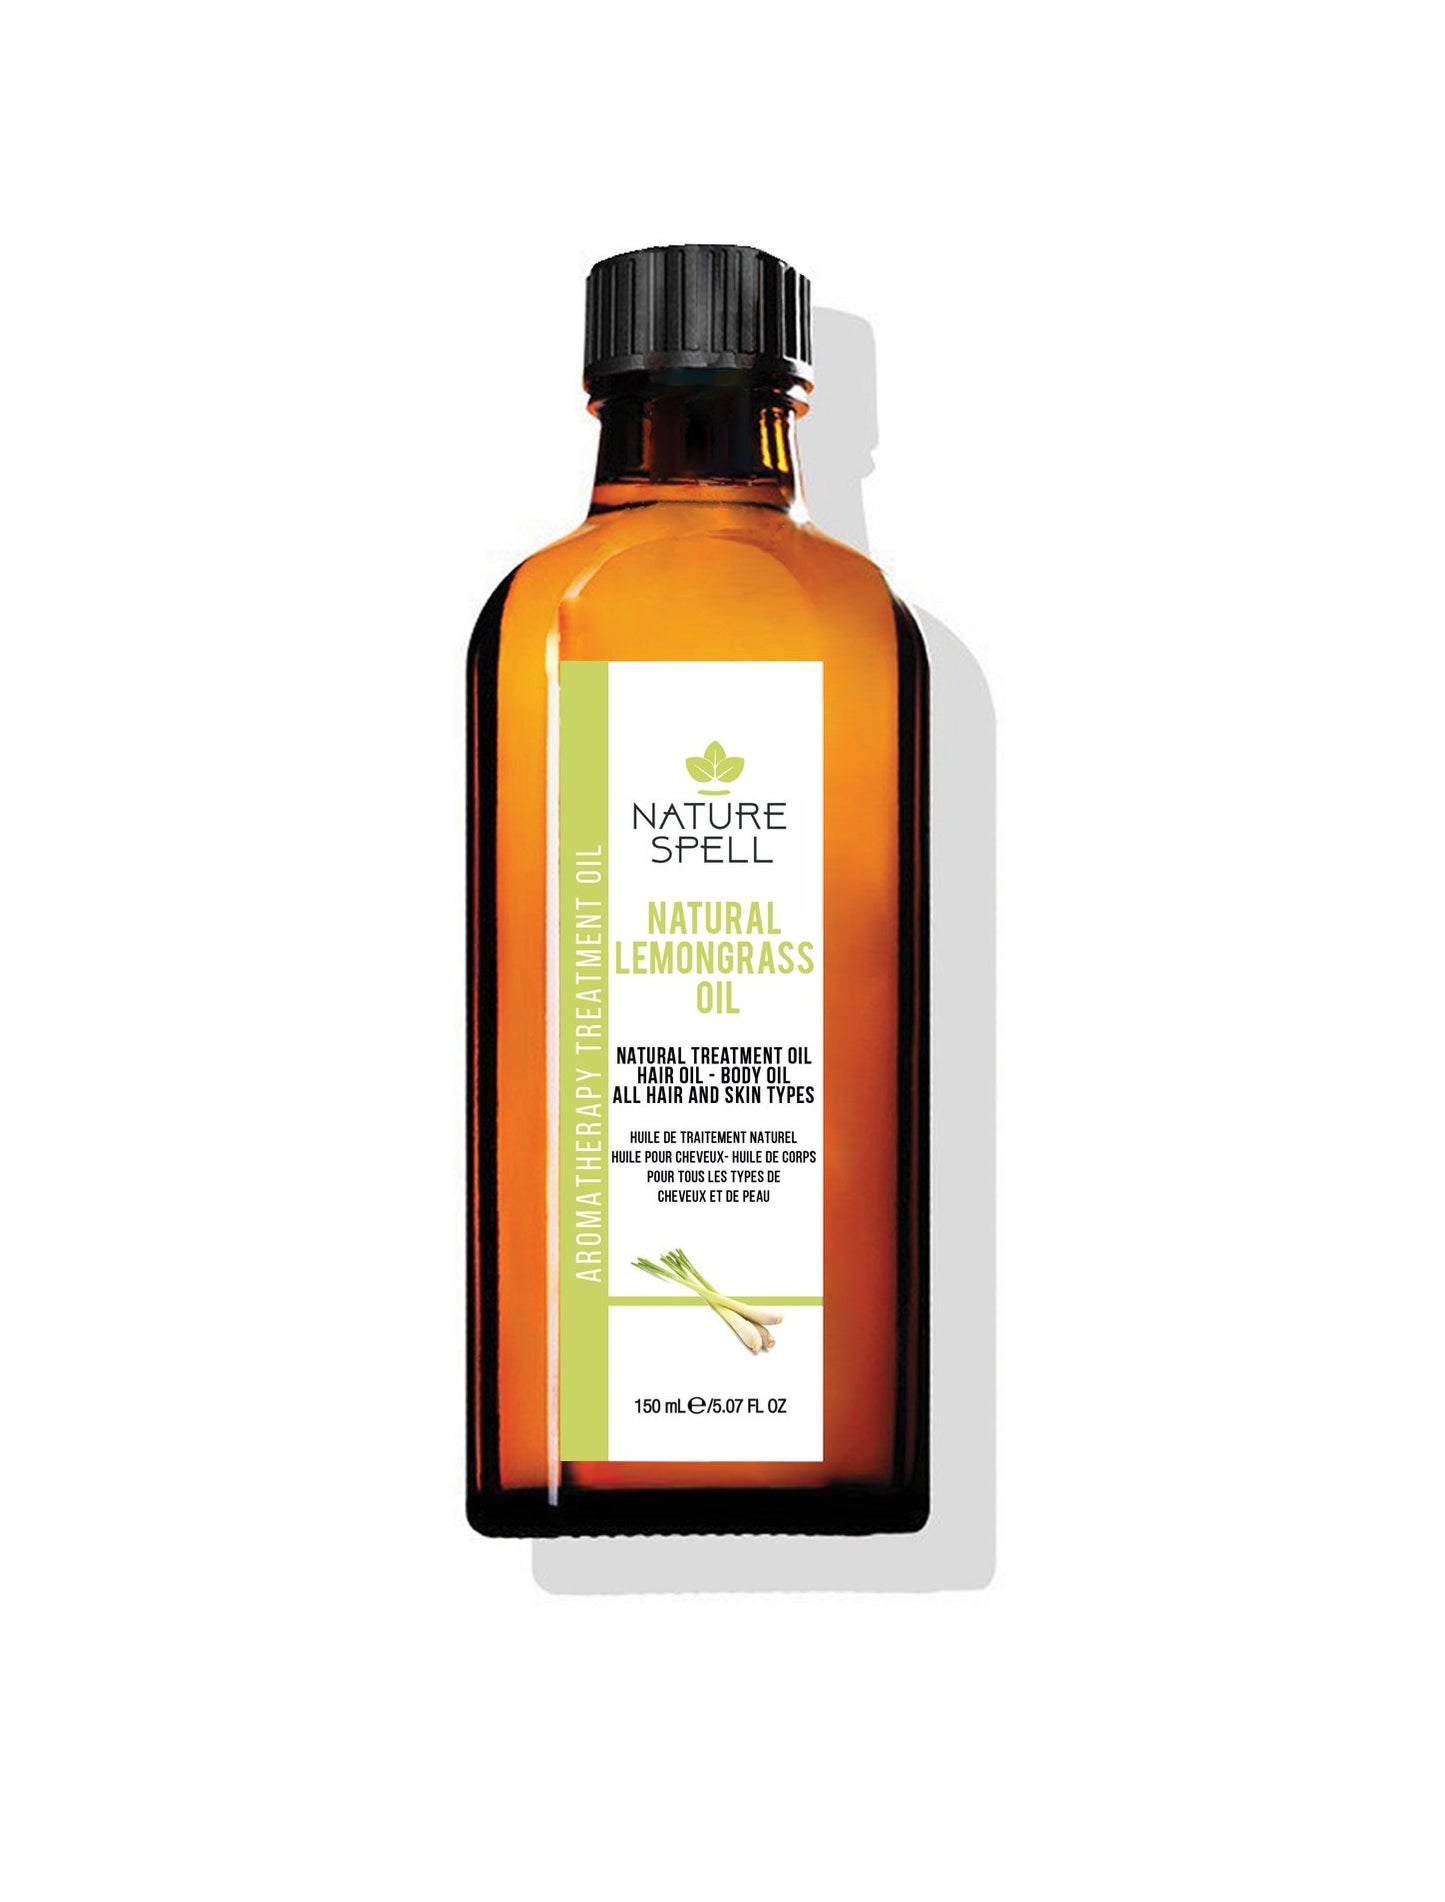 Nature Spell Natural Lemongrass Oil - 150ml